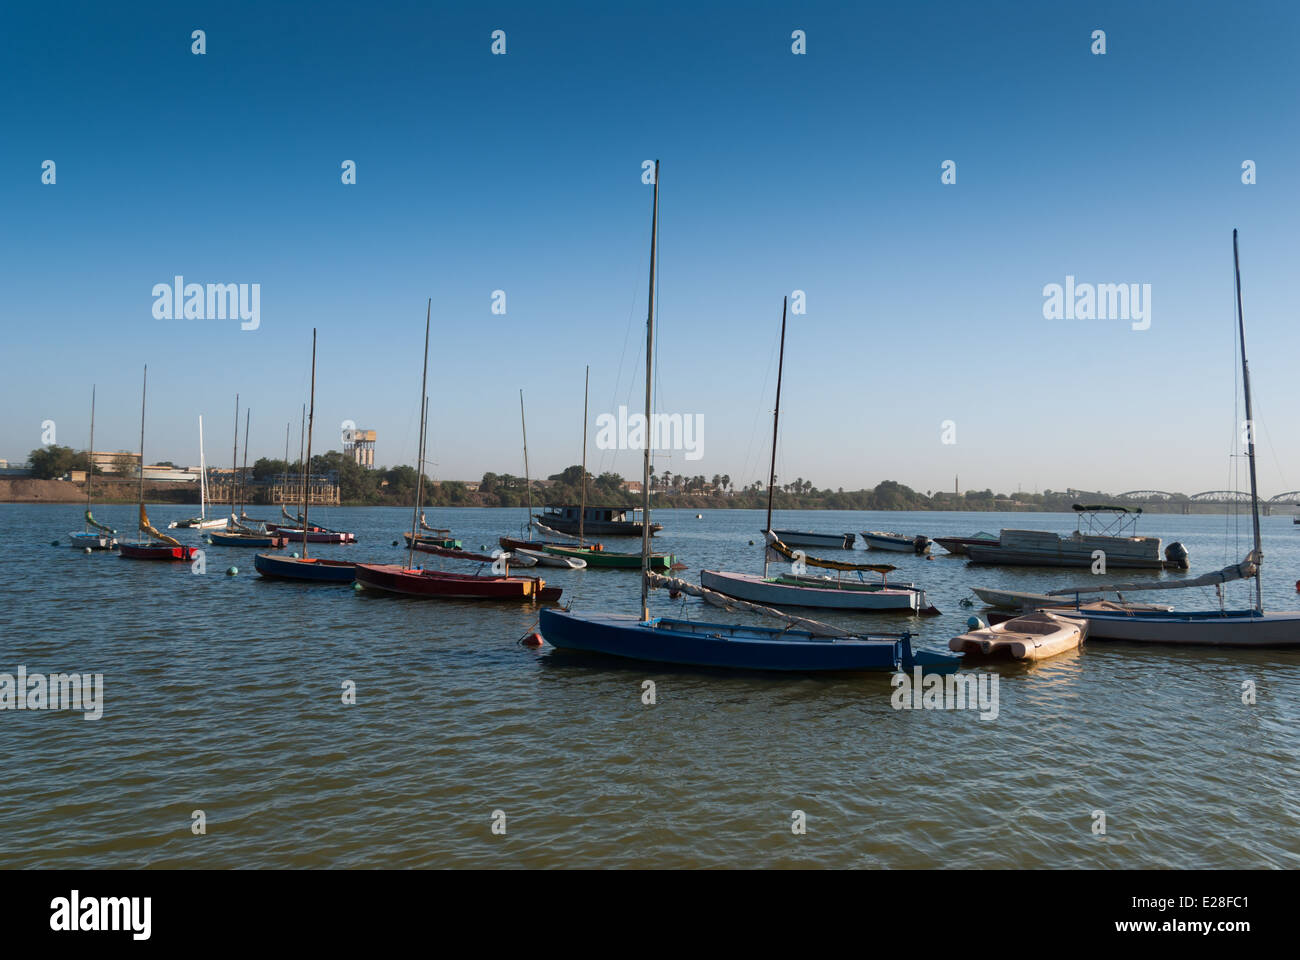 Sailing Boats on Nile, Blue Nile Sailing Club, Khartoum, Sudan Stock Photo